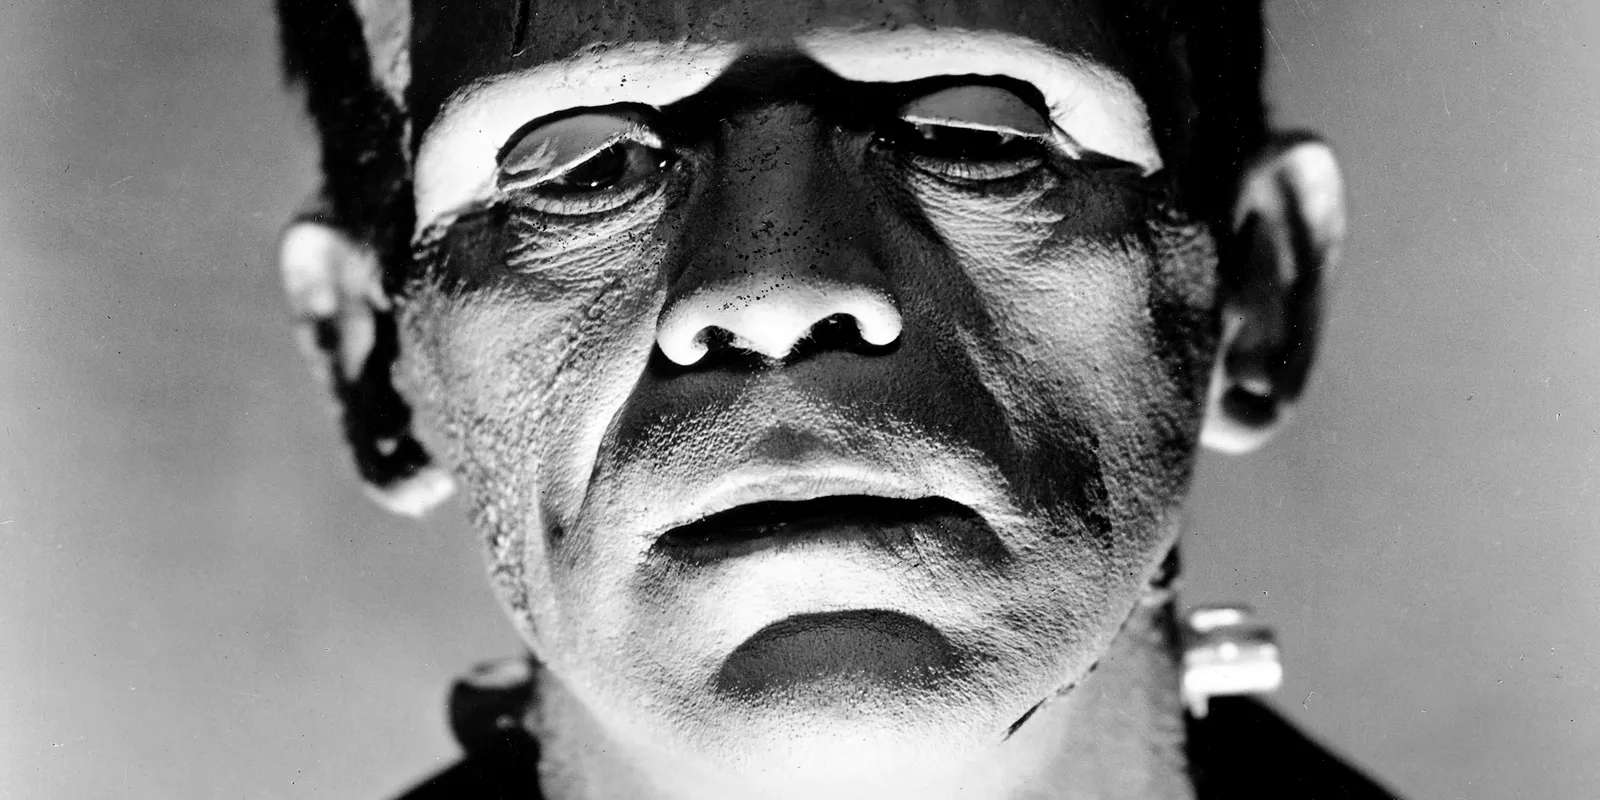 Et portræt af Frankensteins monster